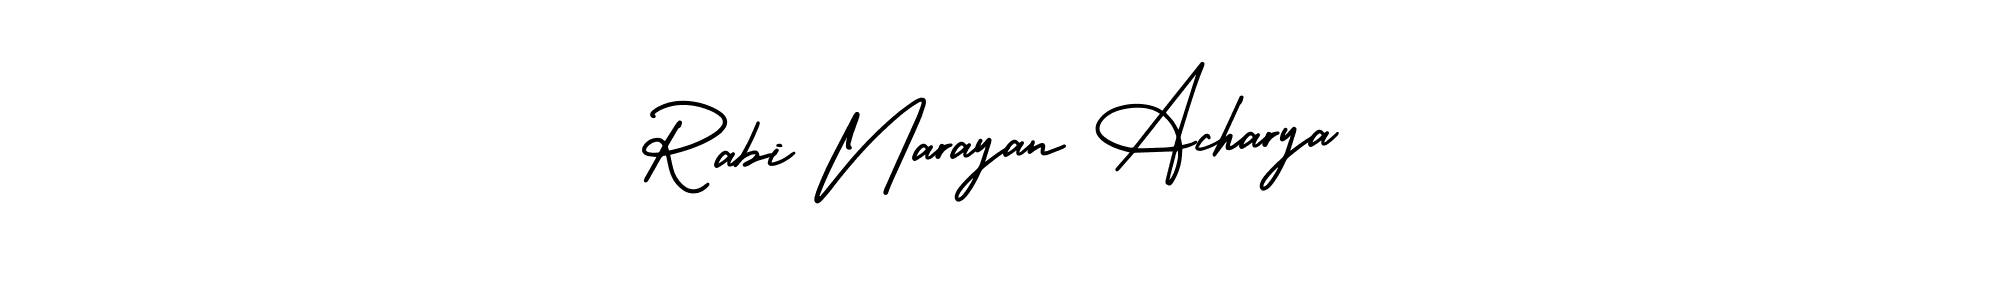 Best and Professional Signature Style for Rabi Narayan Acharya. AmerikaSignatureDemo-Regular Best Signature Style Collection. Rabi Narayan Acharya signature style 3 images and pictures png